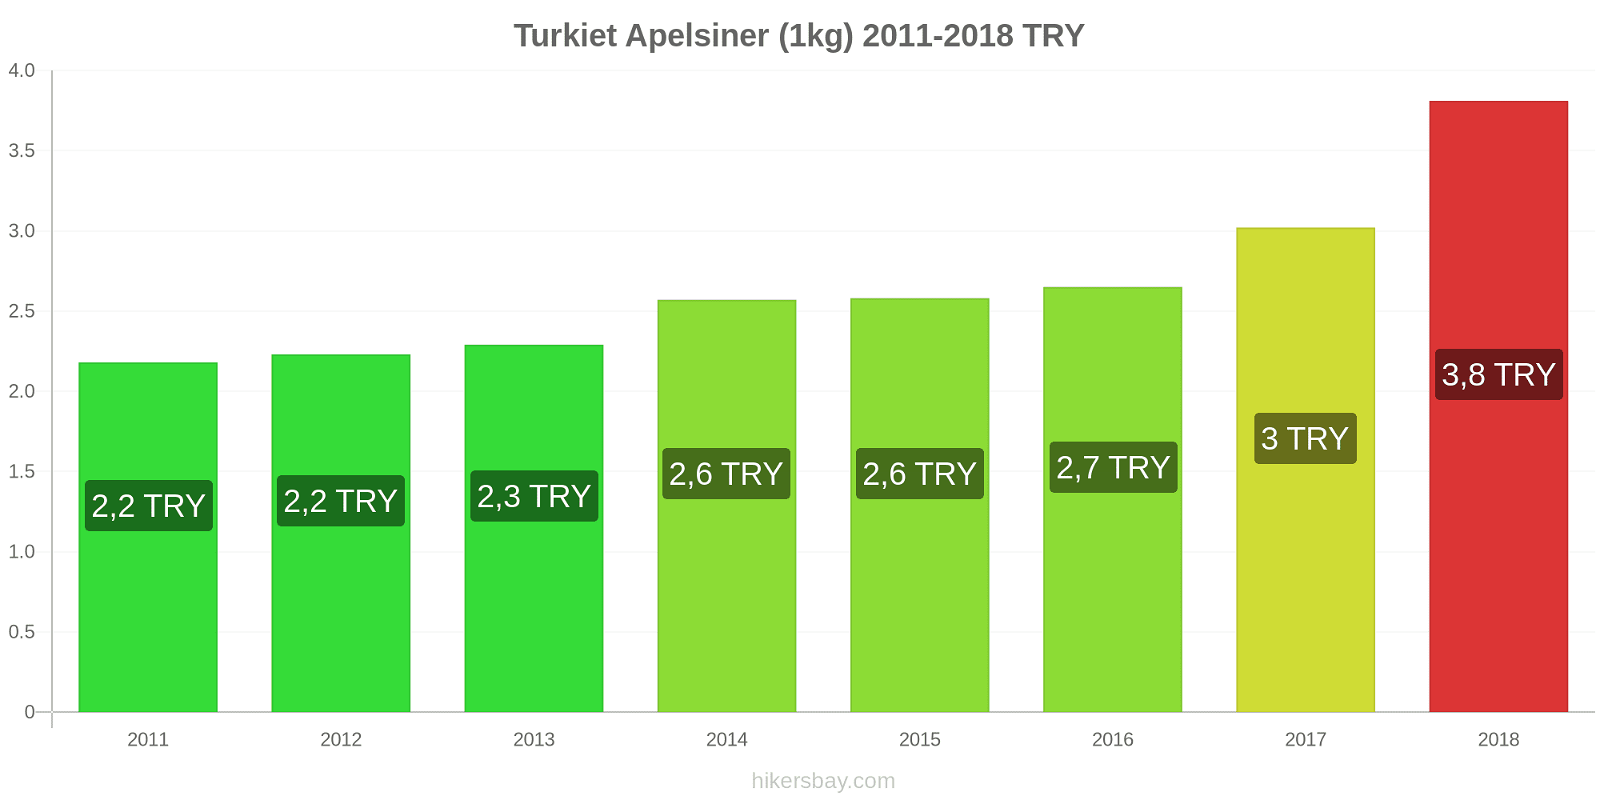 Turkiet prisändringar Apelsiner (1kg) hikersbay.com